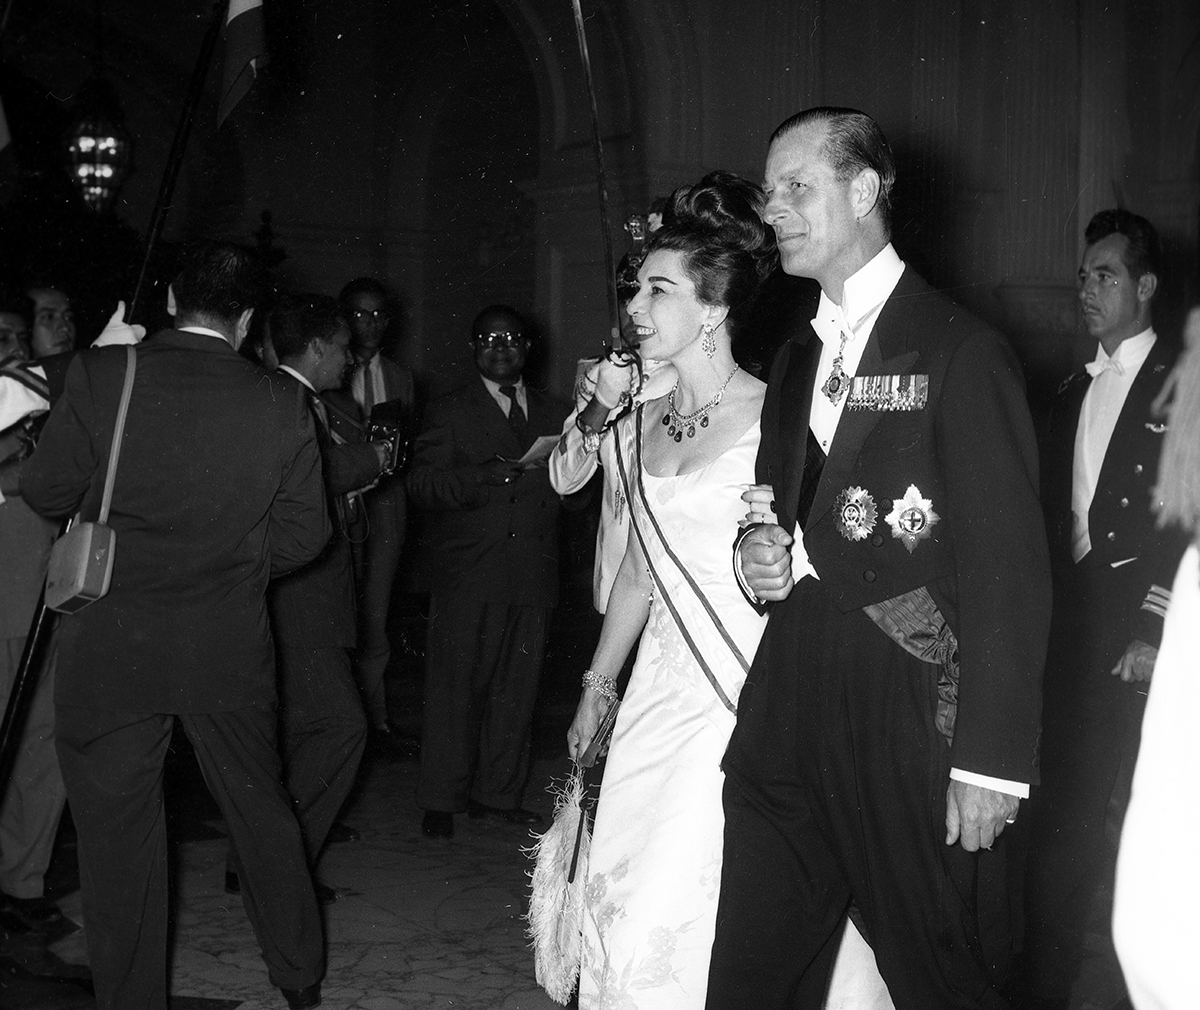 Lima, 21 de febrero de 1962. 

El duque de Edimburgo en una de las recepciones protocolares que la colonia británica organizó en honor a su vista al Perú. (Foto: GEC Archivo Histórico)